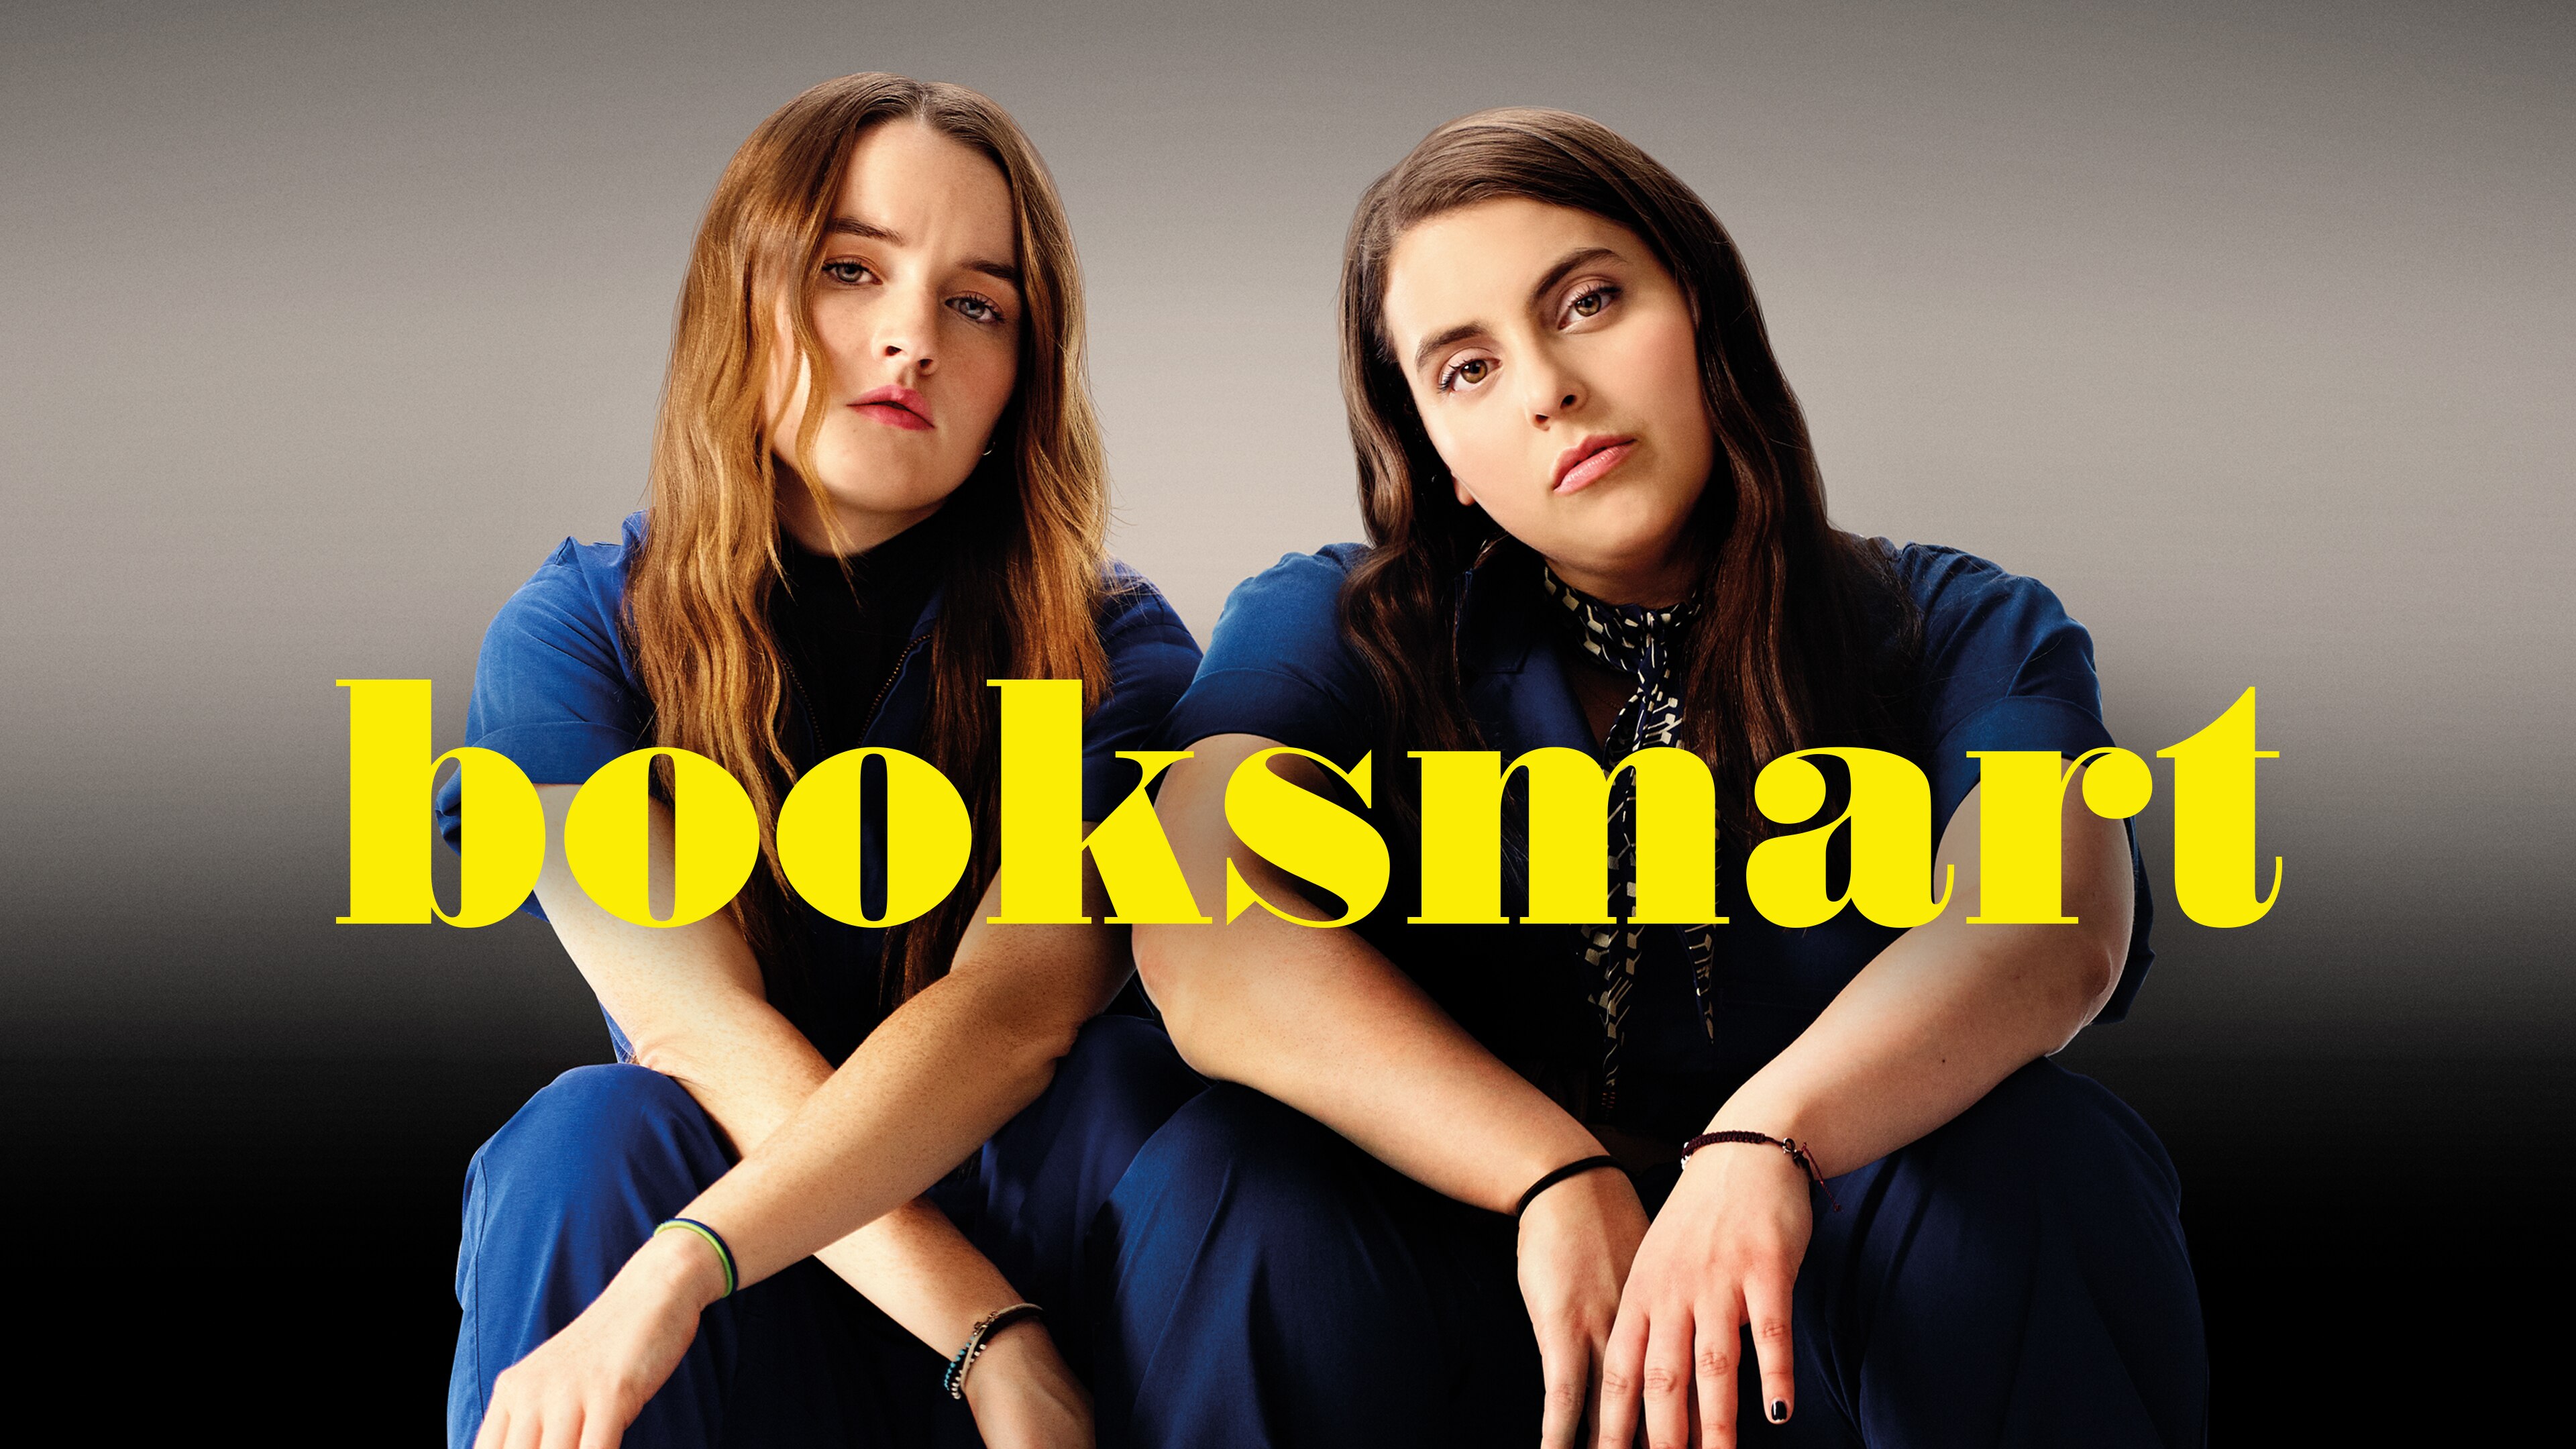 Booksmart (2019) - SPOILER-FREE Review